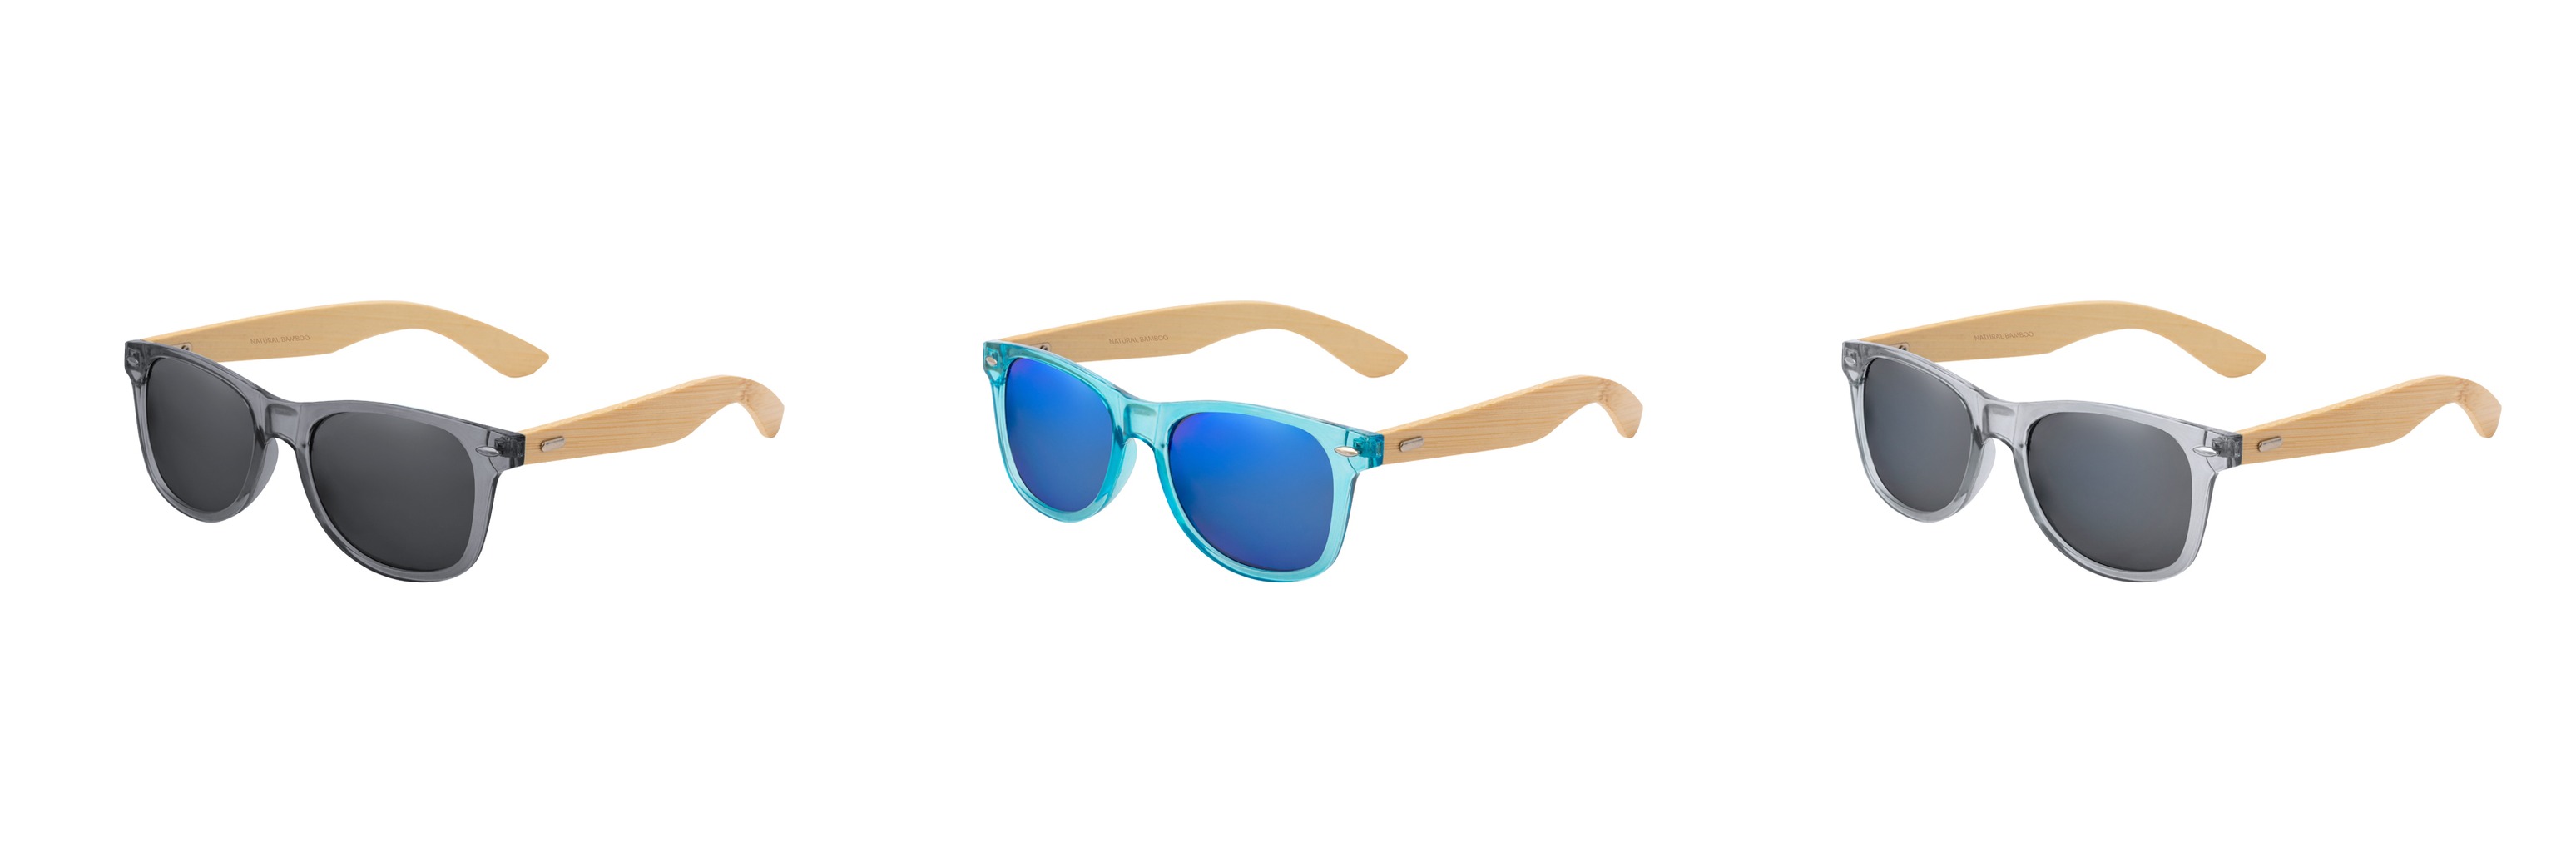 Sunglasses Dristan BLUE